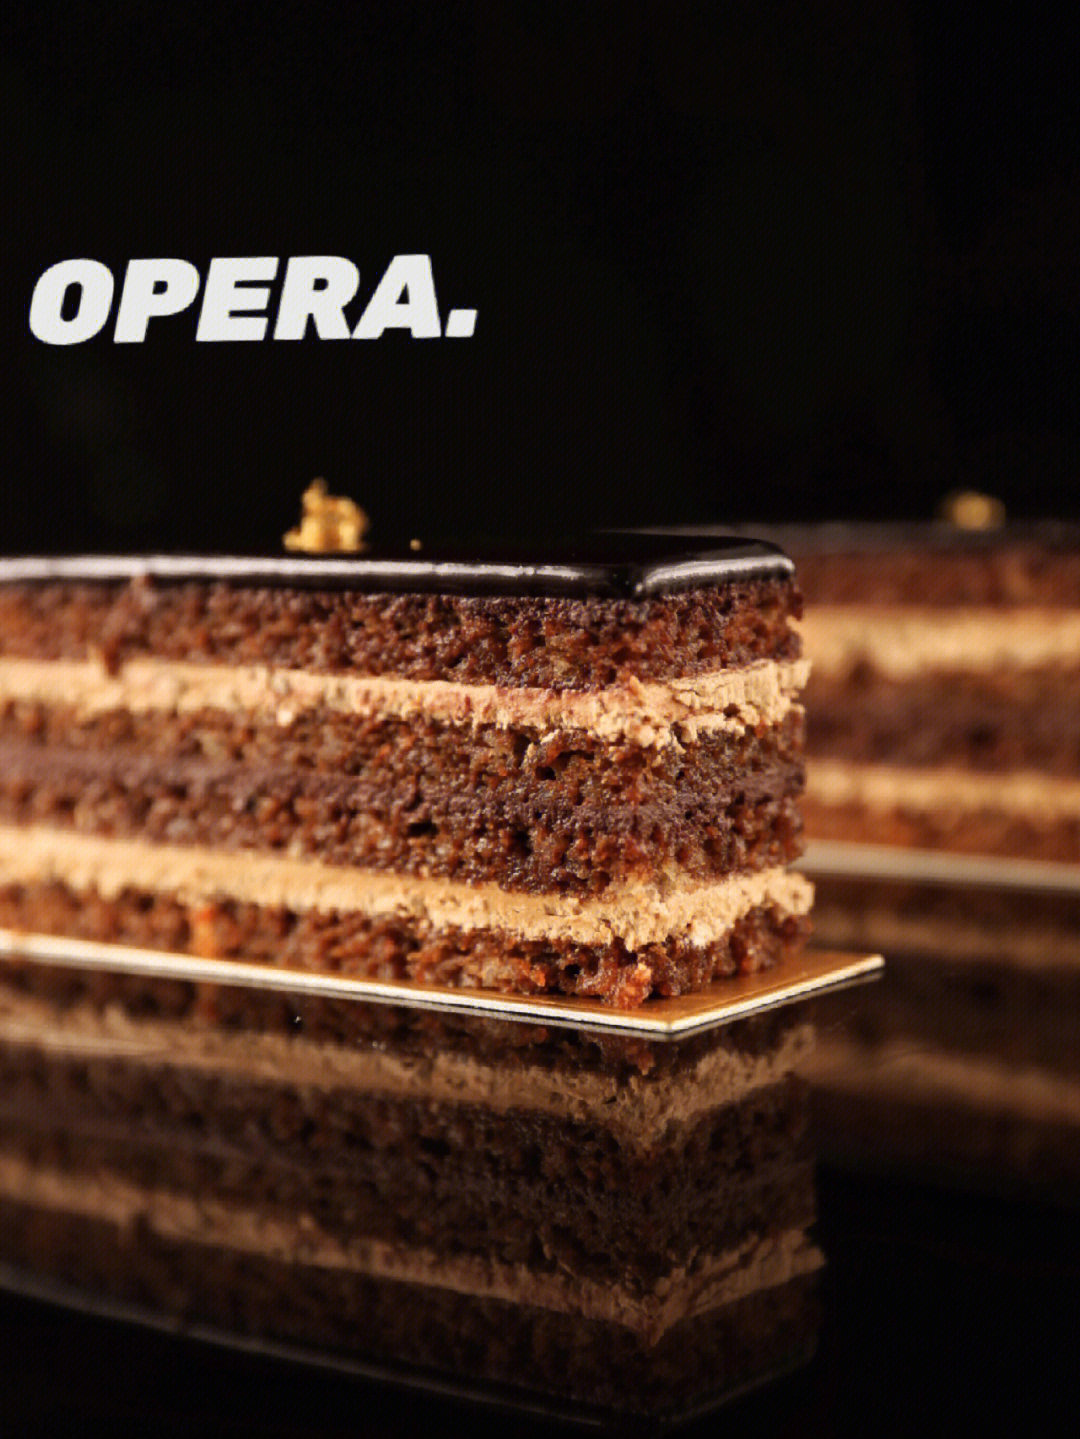 歌剧院蛋糕长宽高图片